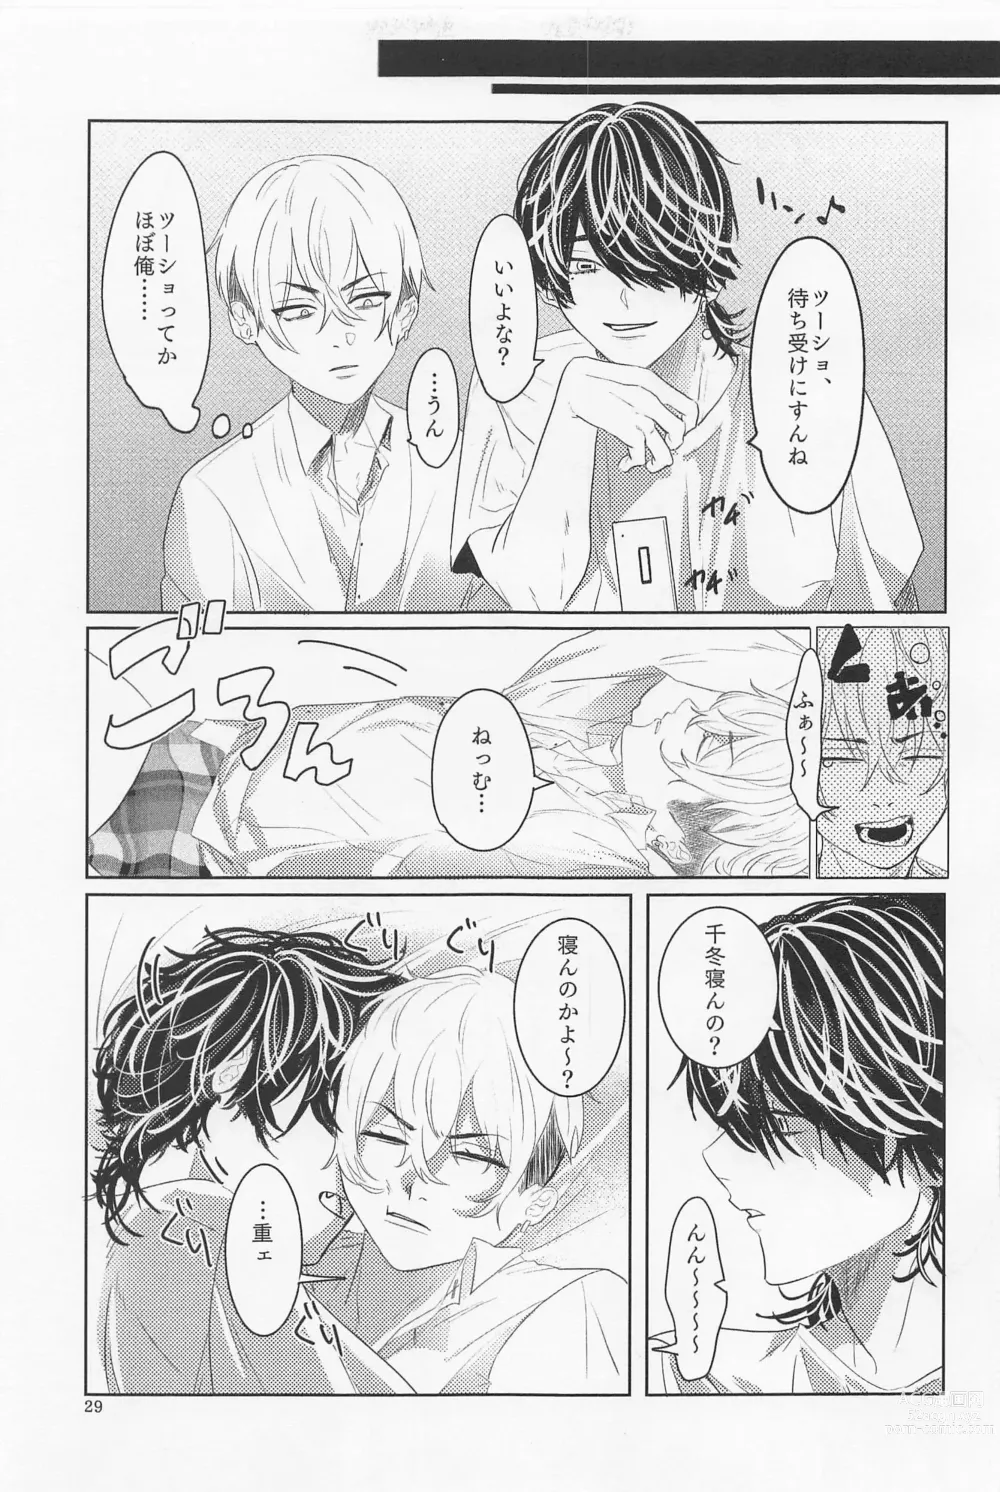 Page 28 of doujinshi Ao to Haru